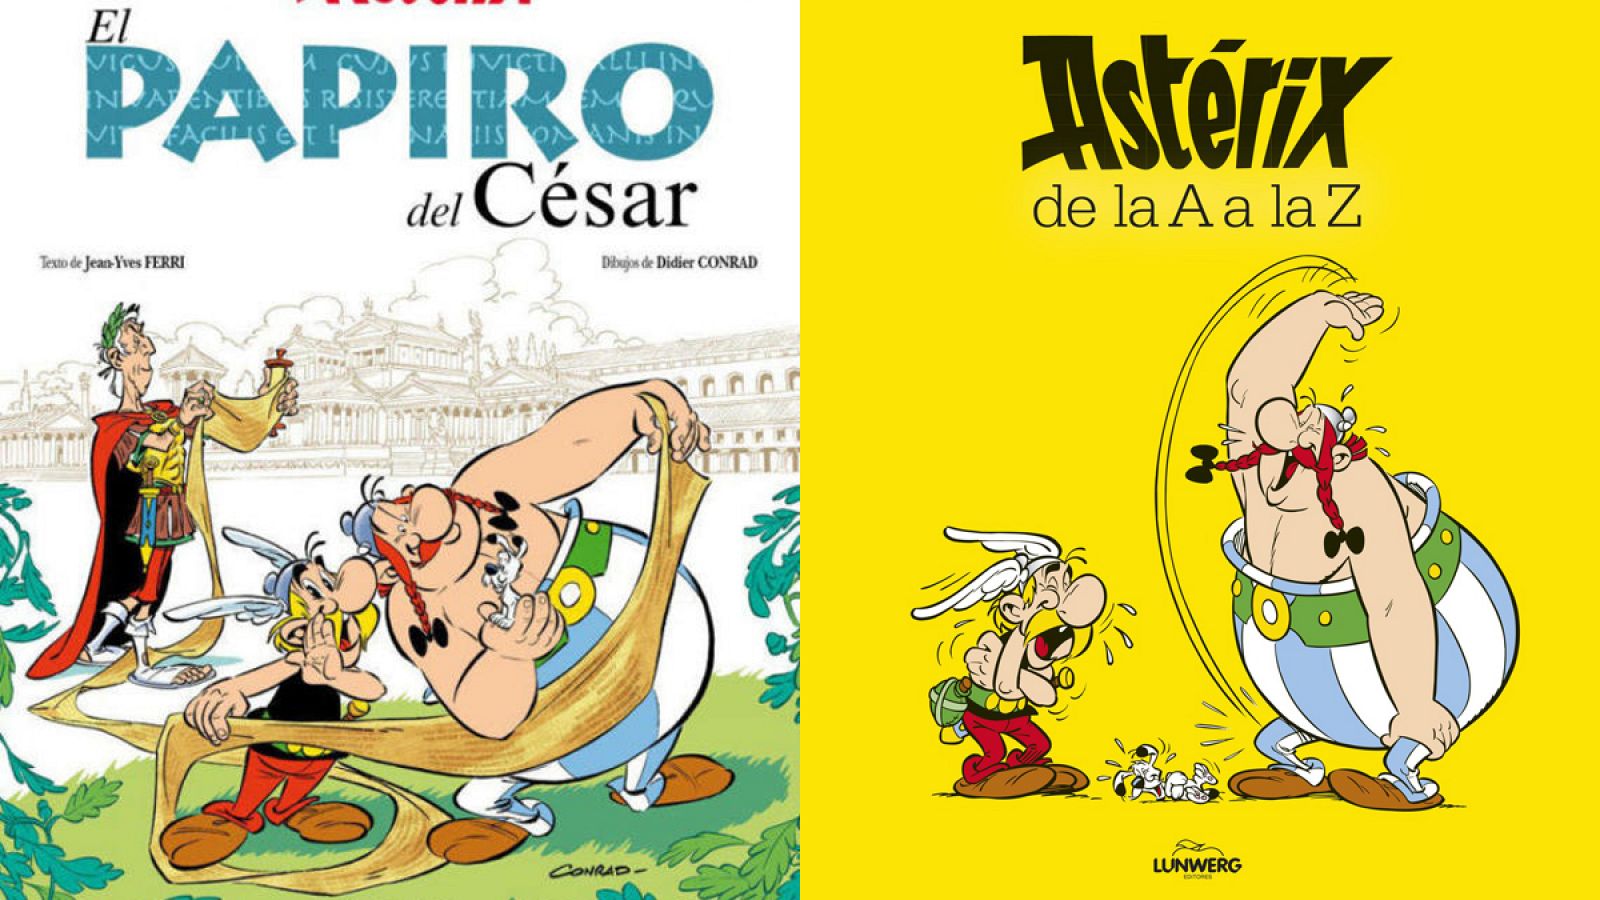 Dos nuevos títulos de Astérix: 'El papiro del César' y 'Astérix de la A a la Z'